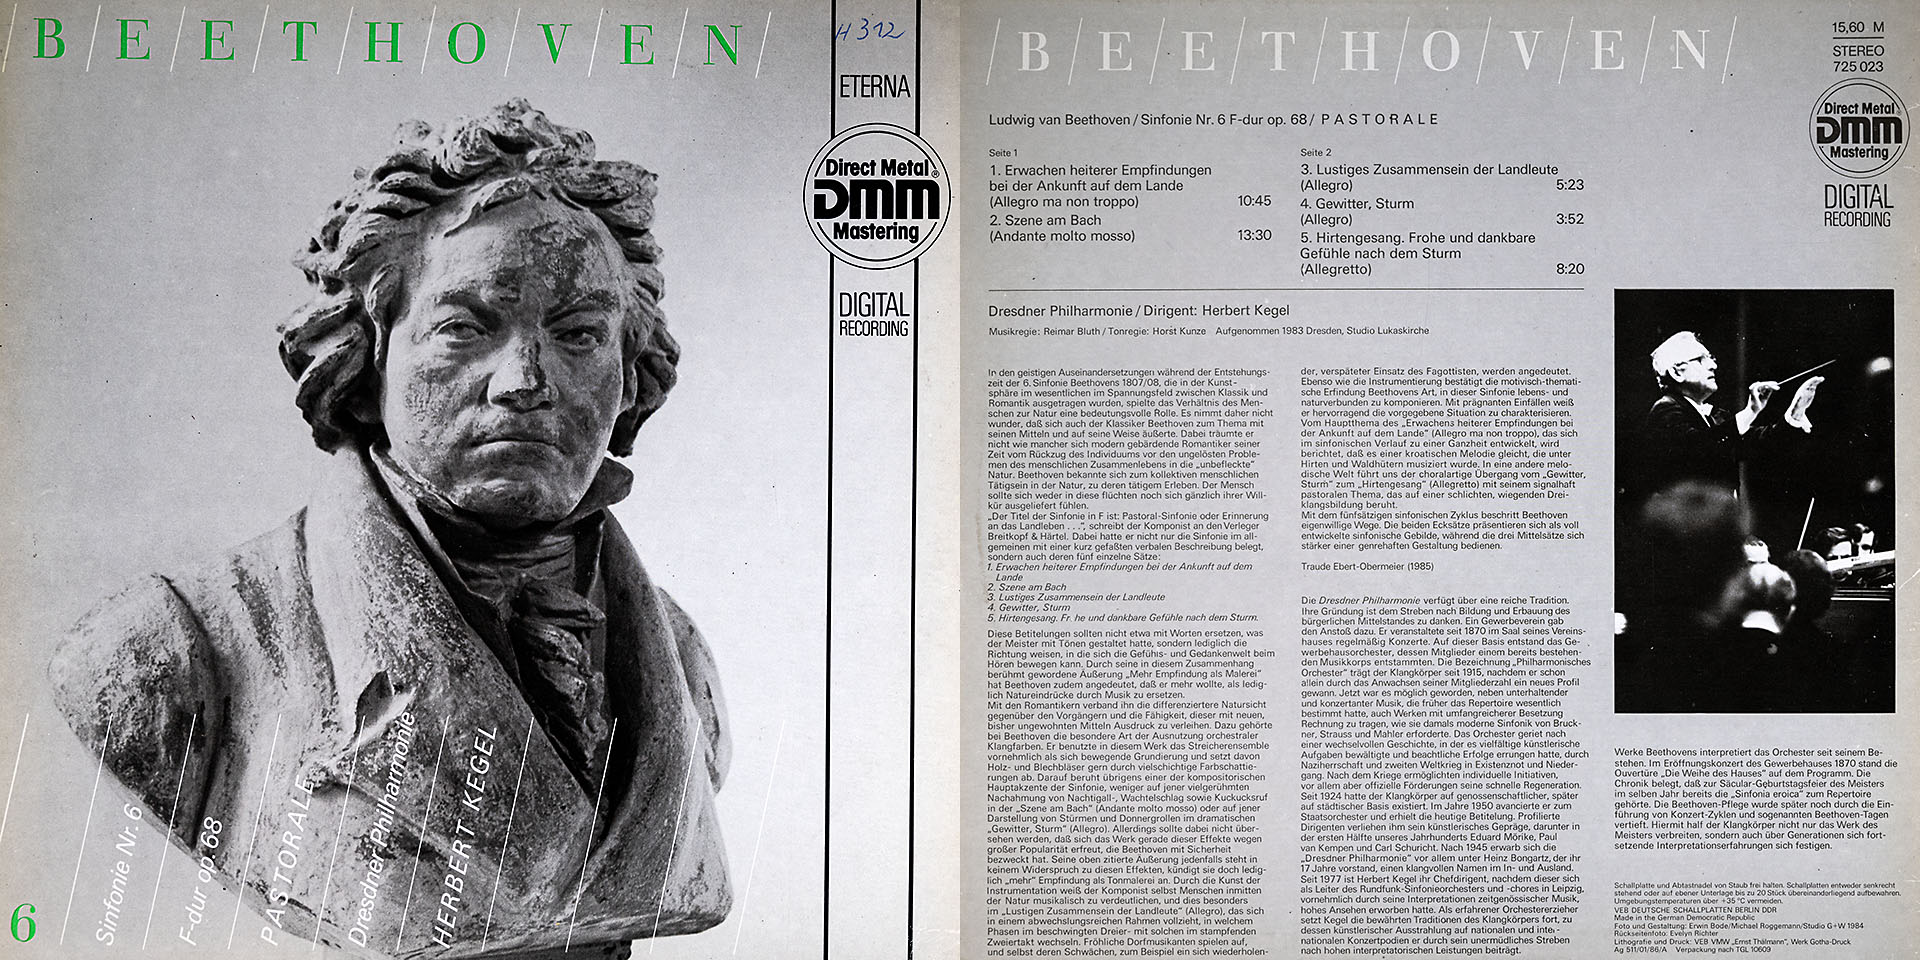 Beethoven - Sinfonie Nr. 6 F - dur op. 68 / Pastorale - Dresdner Philharmonie, Dirigent  Herbert Kegel